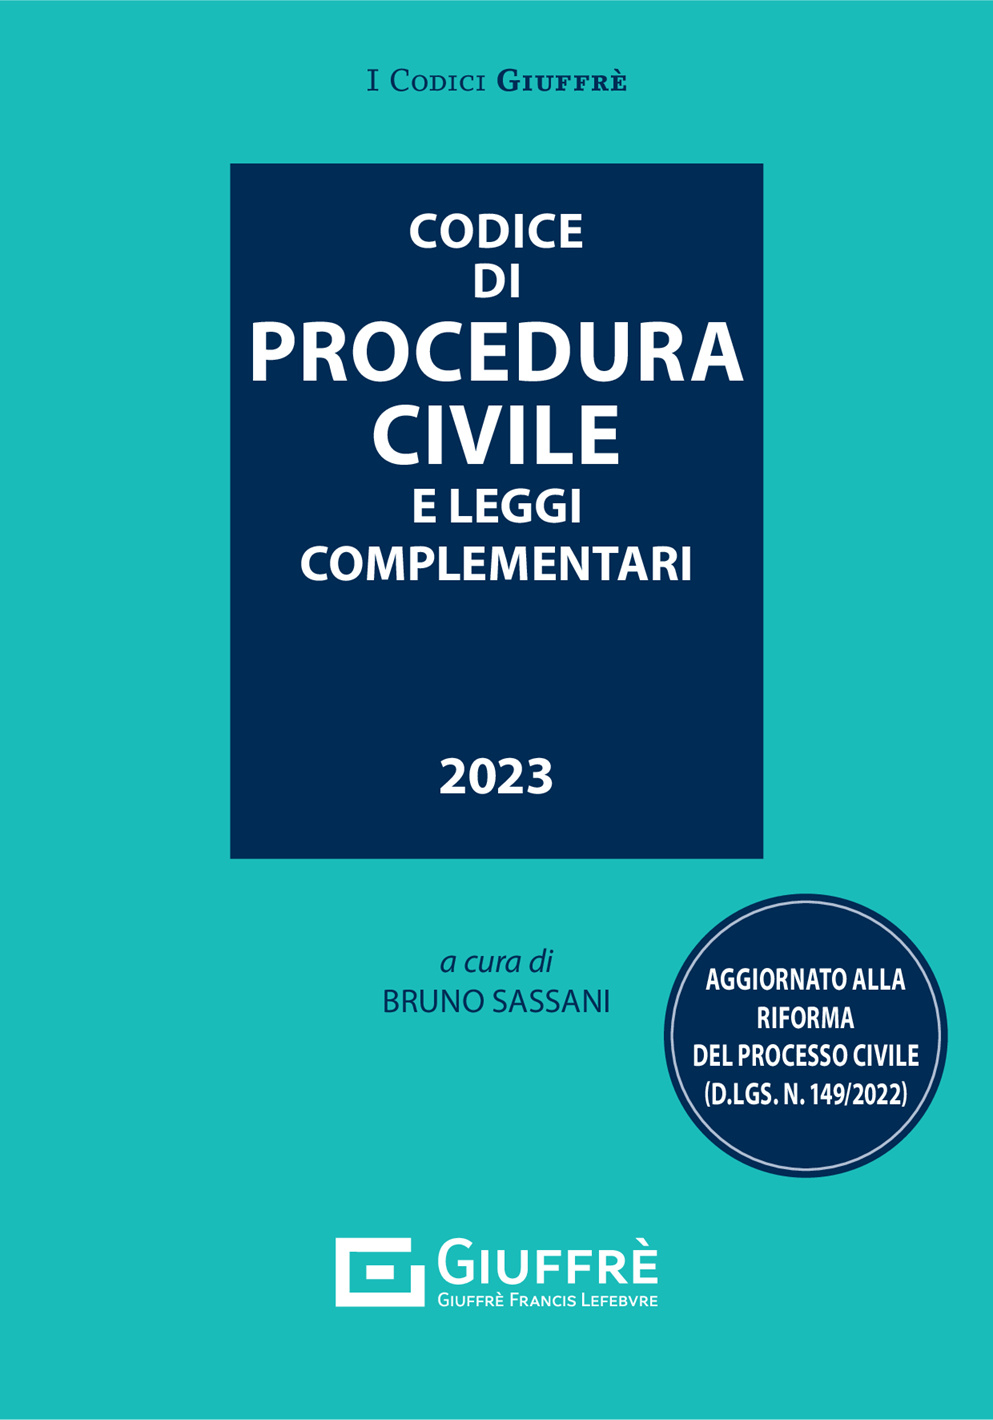 Codice di Procedura Civile e leggi complementari - Pocket 2024 - OD1/2